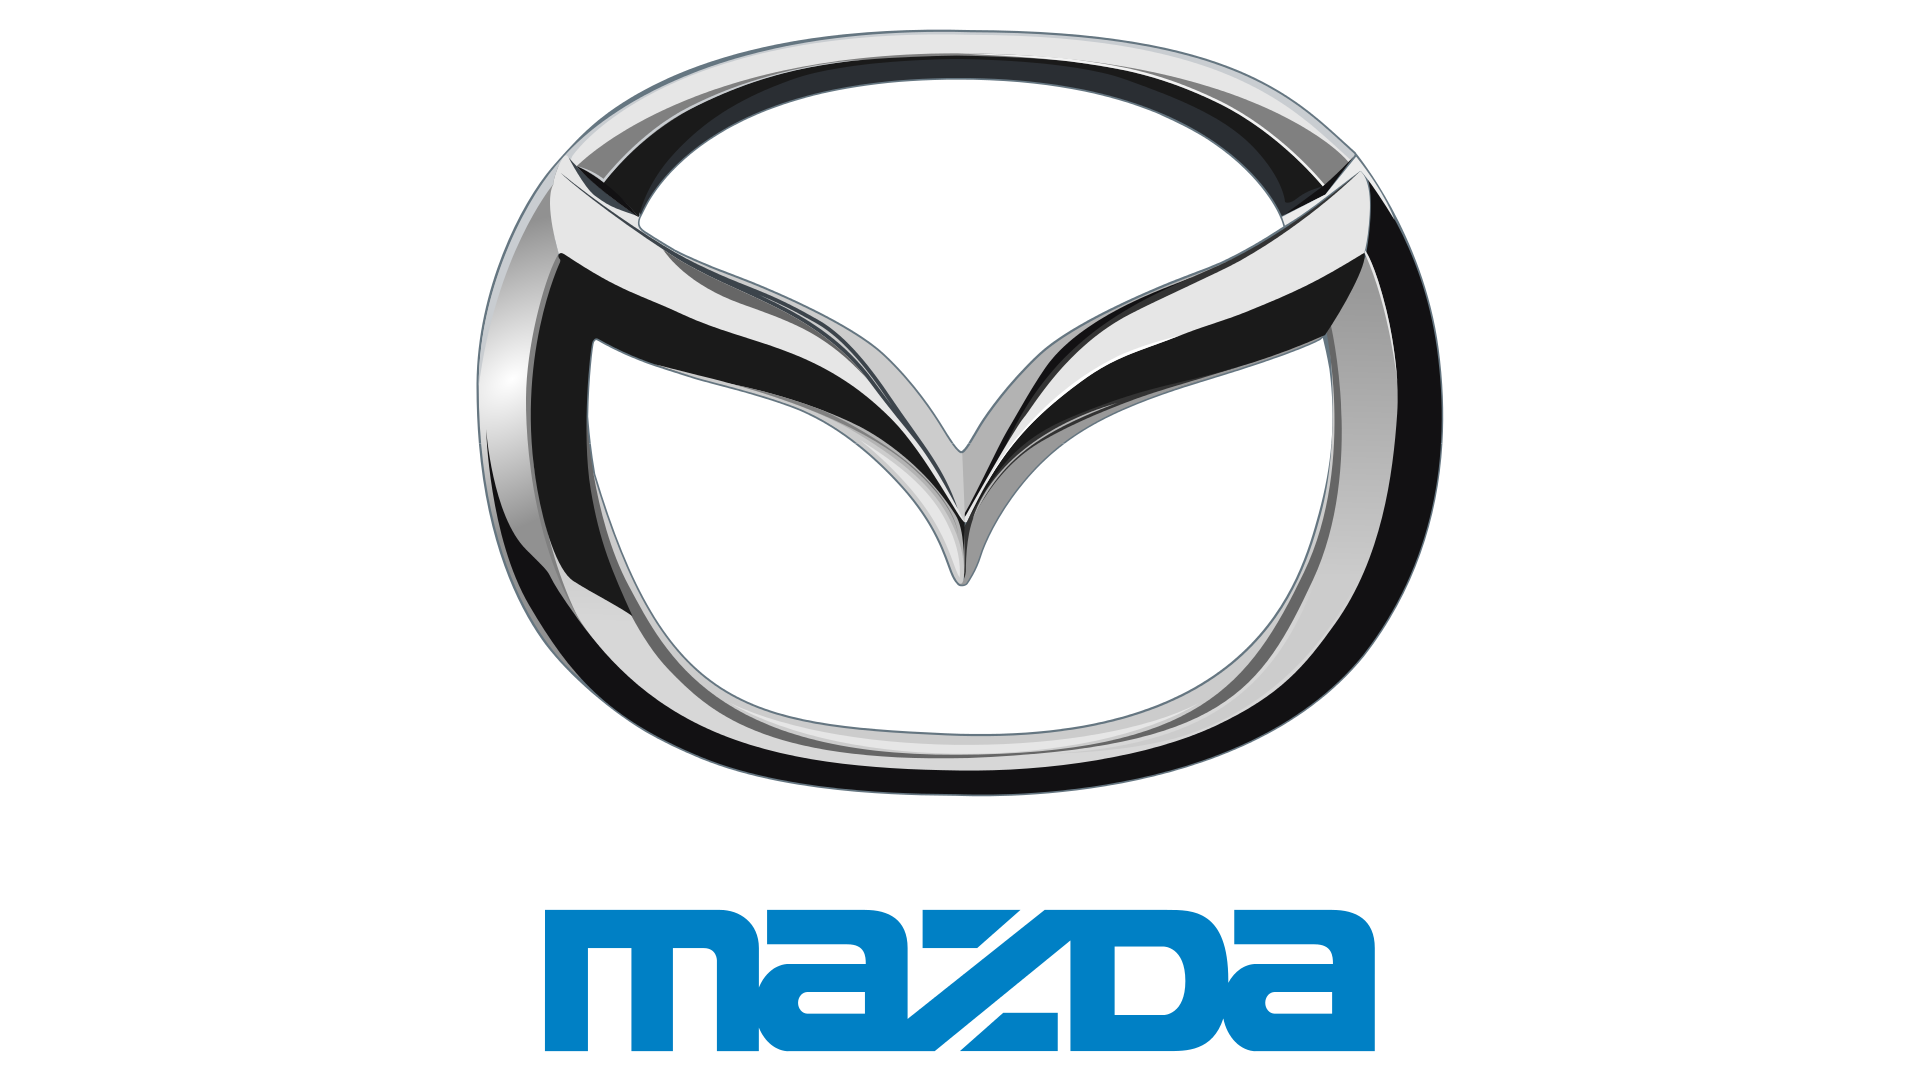 Mazda-logo-1997-1920x1080.png